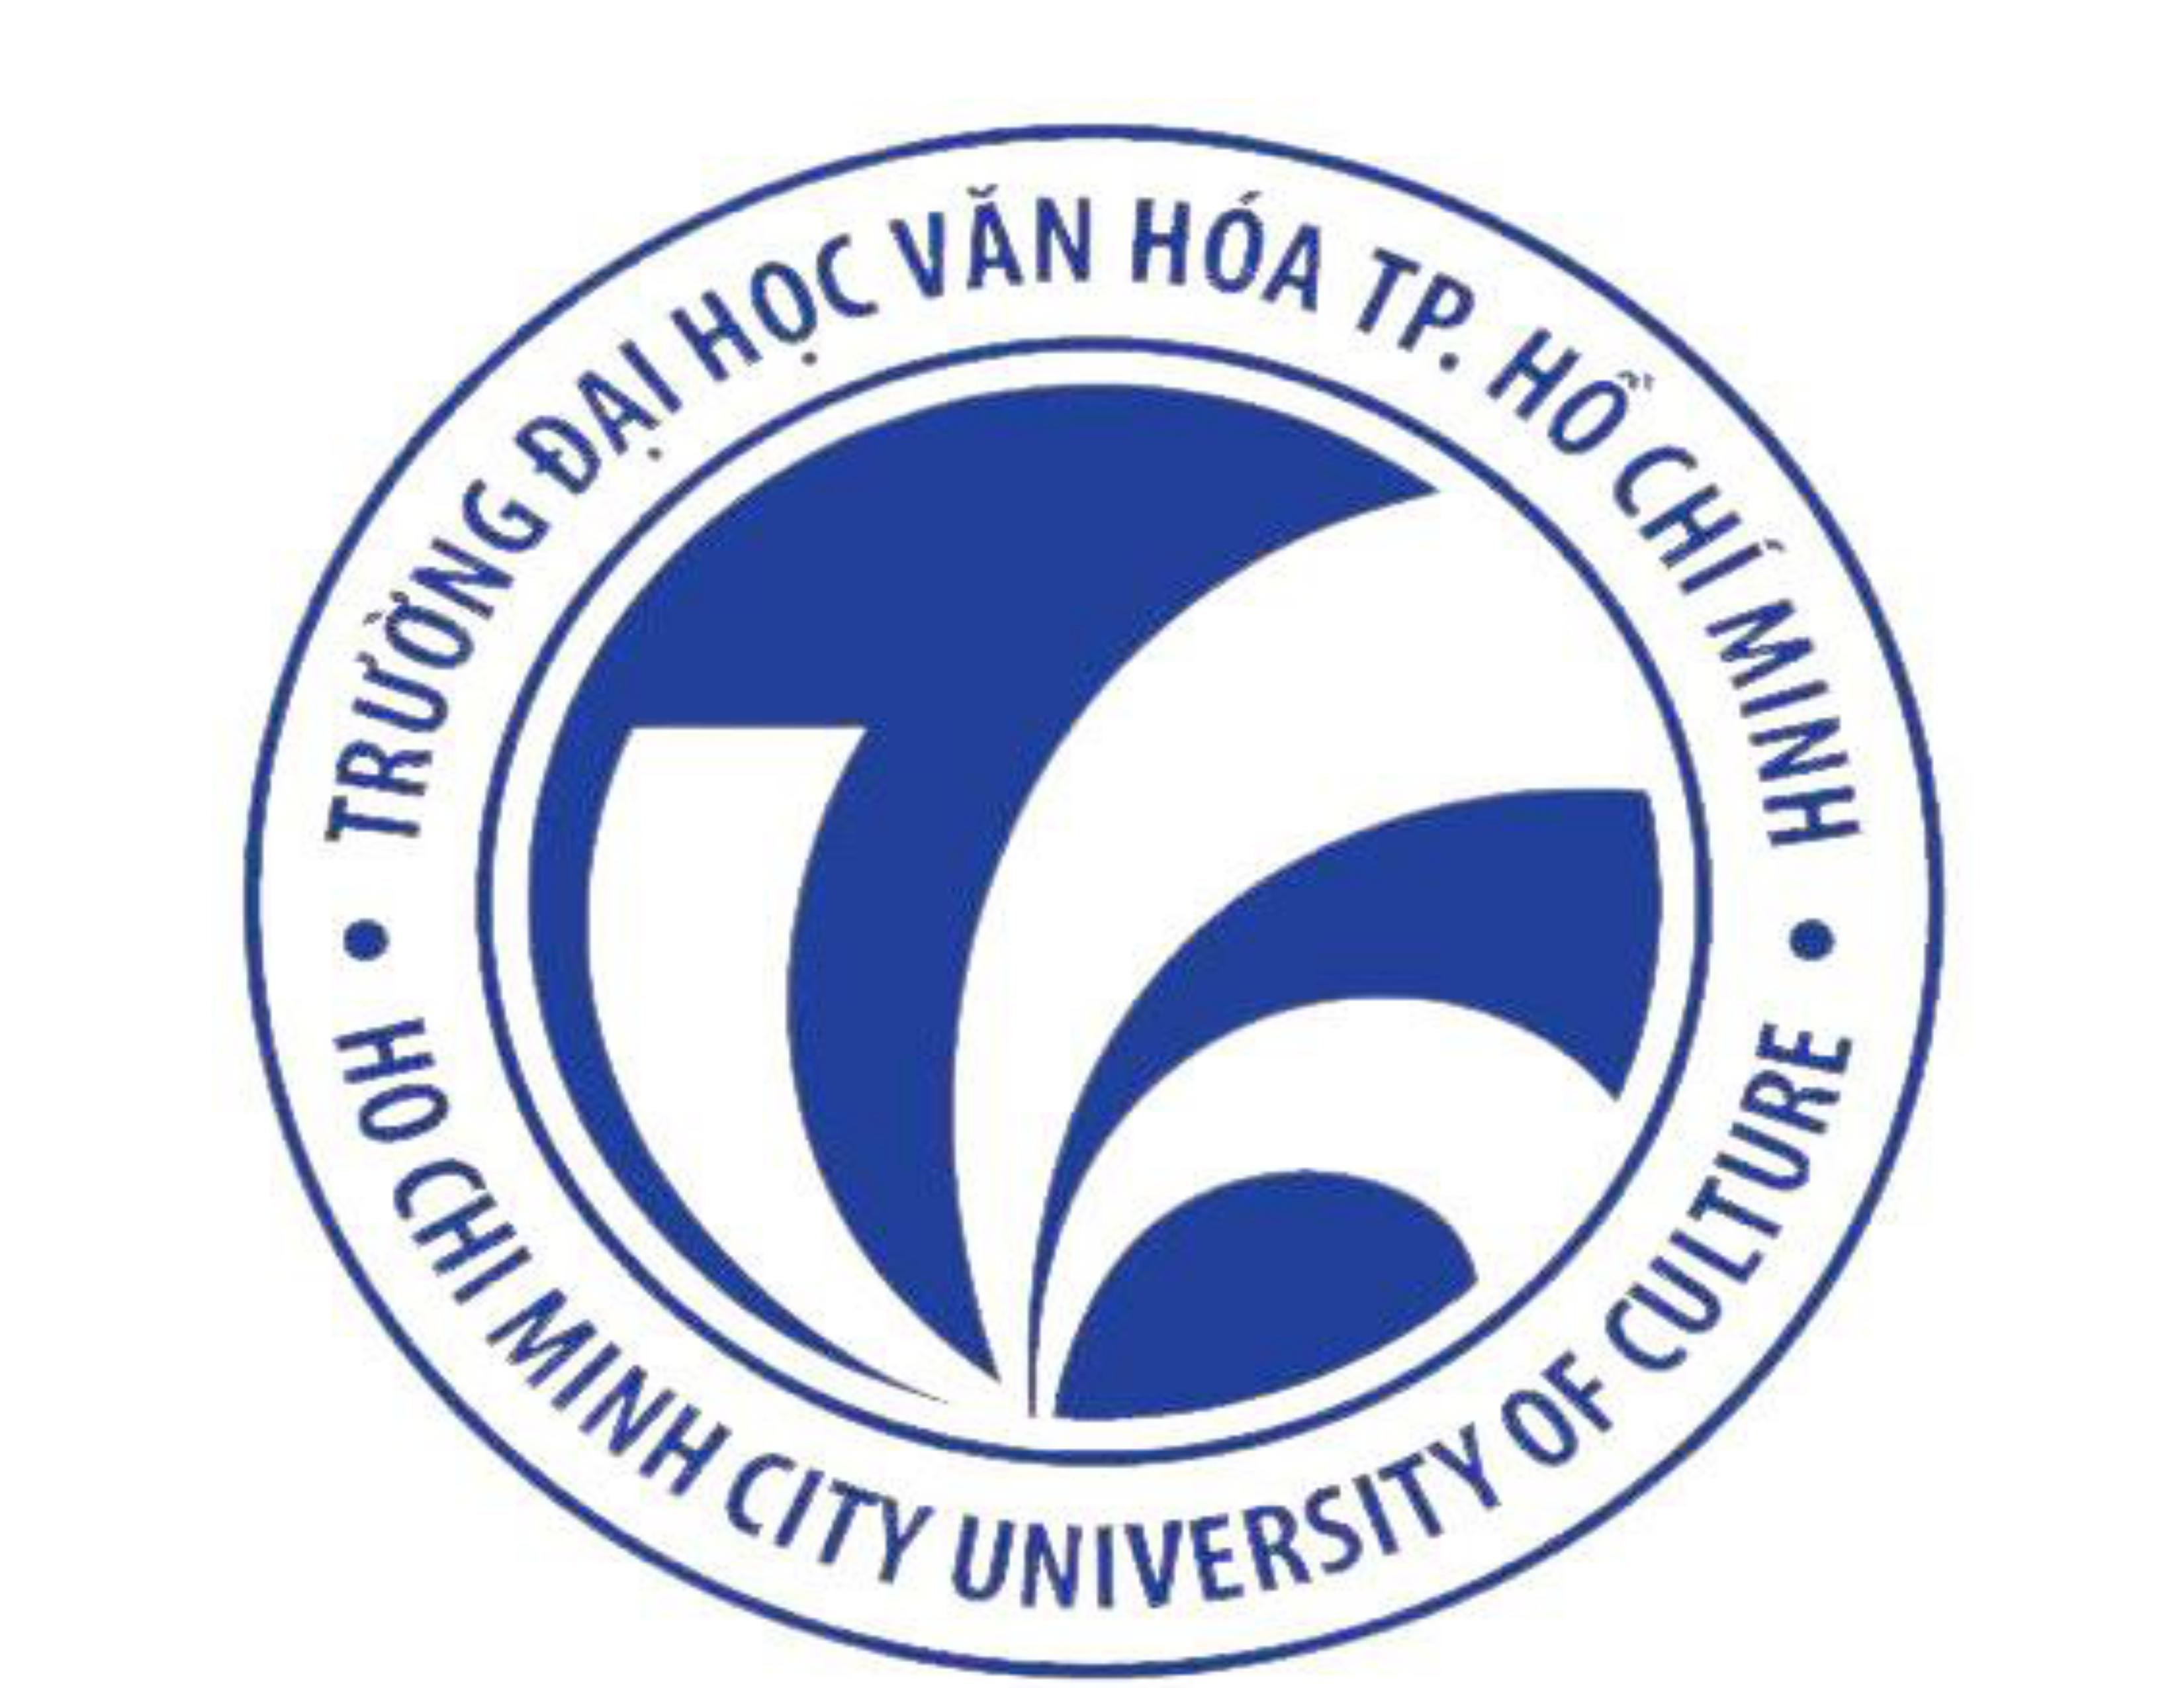 Quản lý nguồn lực tham gia các sự kiện do Sở Văn hóa và Thể thao Thành phố Hồ Chí Minh tổ chức